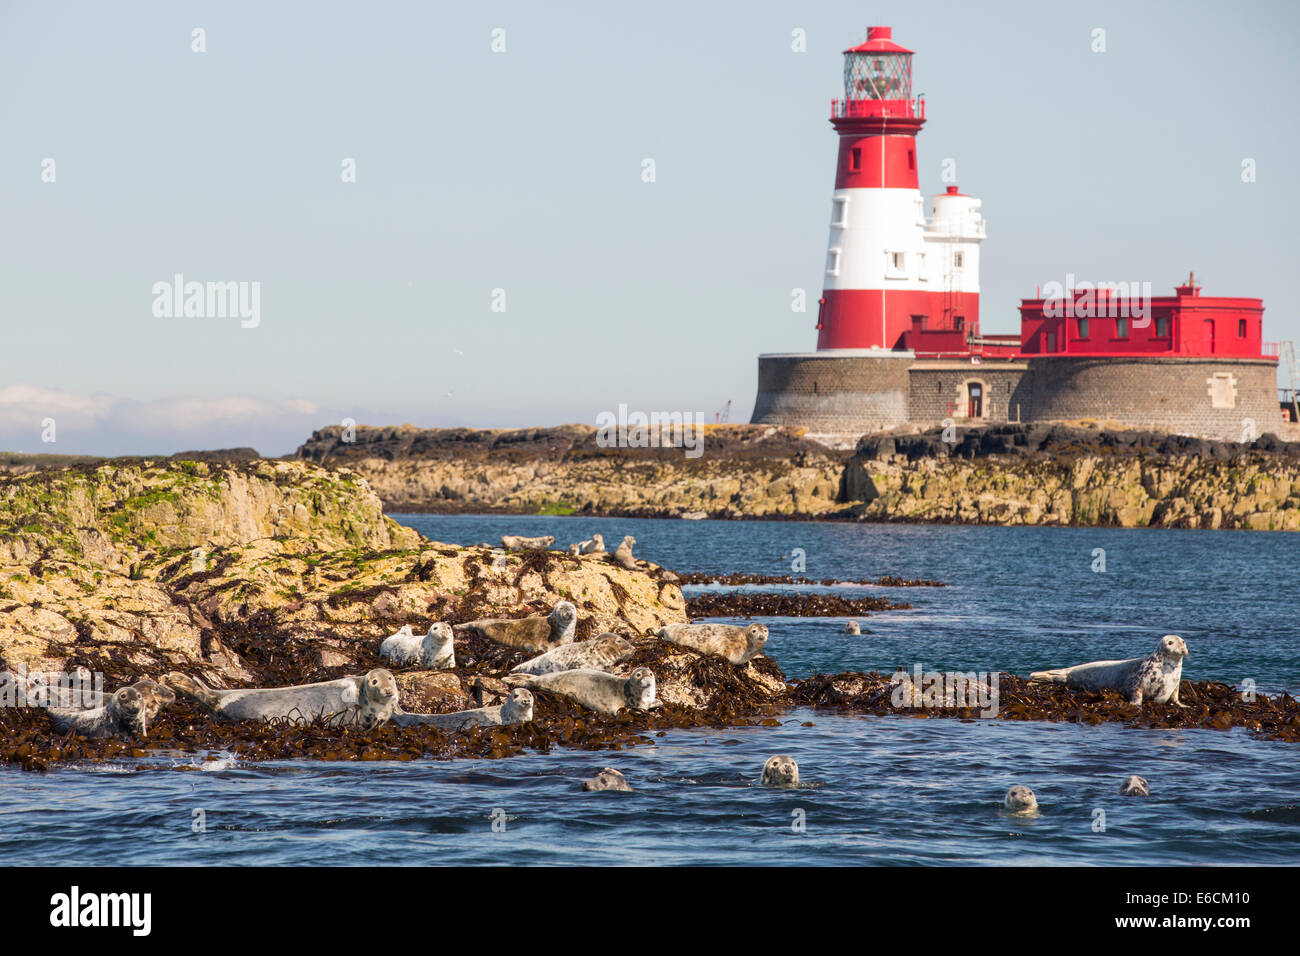 Les phoques communs, Phoca vitulina, sur l'îles Farne, Northumberland, Angleterre, avec le phare de Longstone que Grace Darling réalisé son célèbre de sauvetage. Banque D'Images